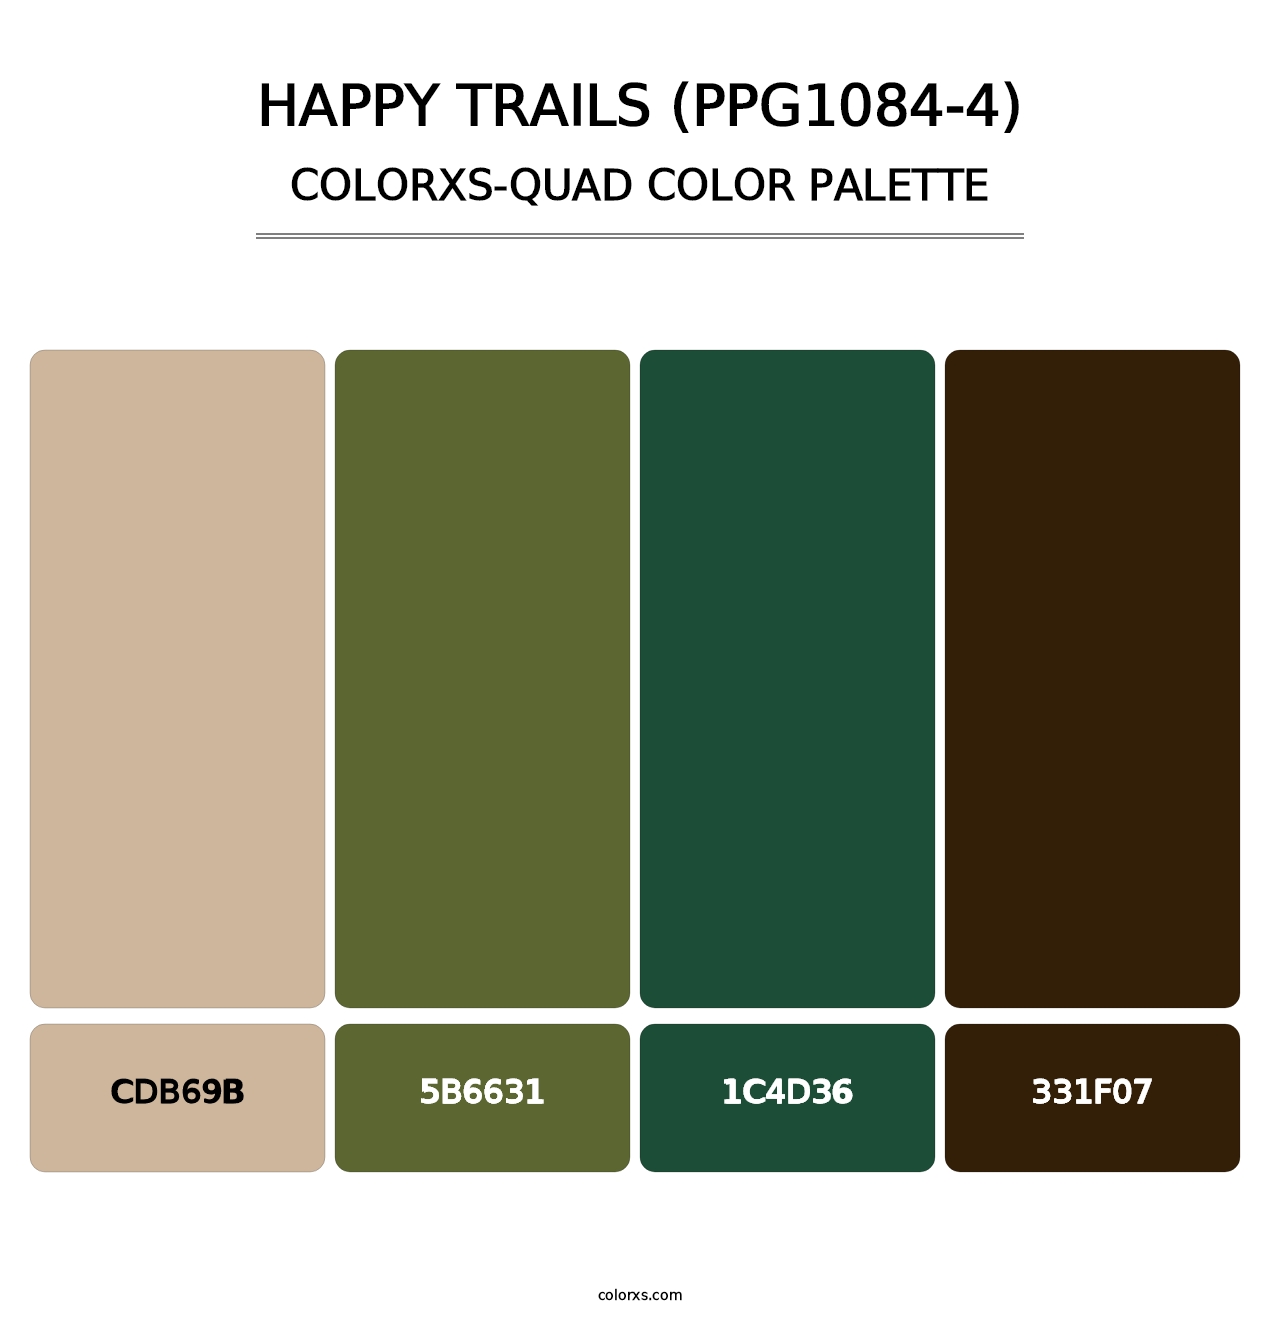 Happy Trails (PPG1084-4) - Colorxs Quad Palette